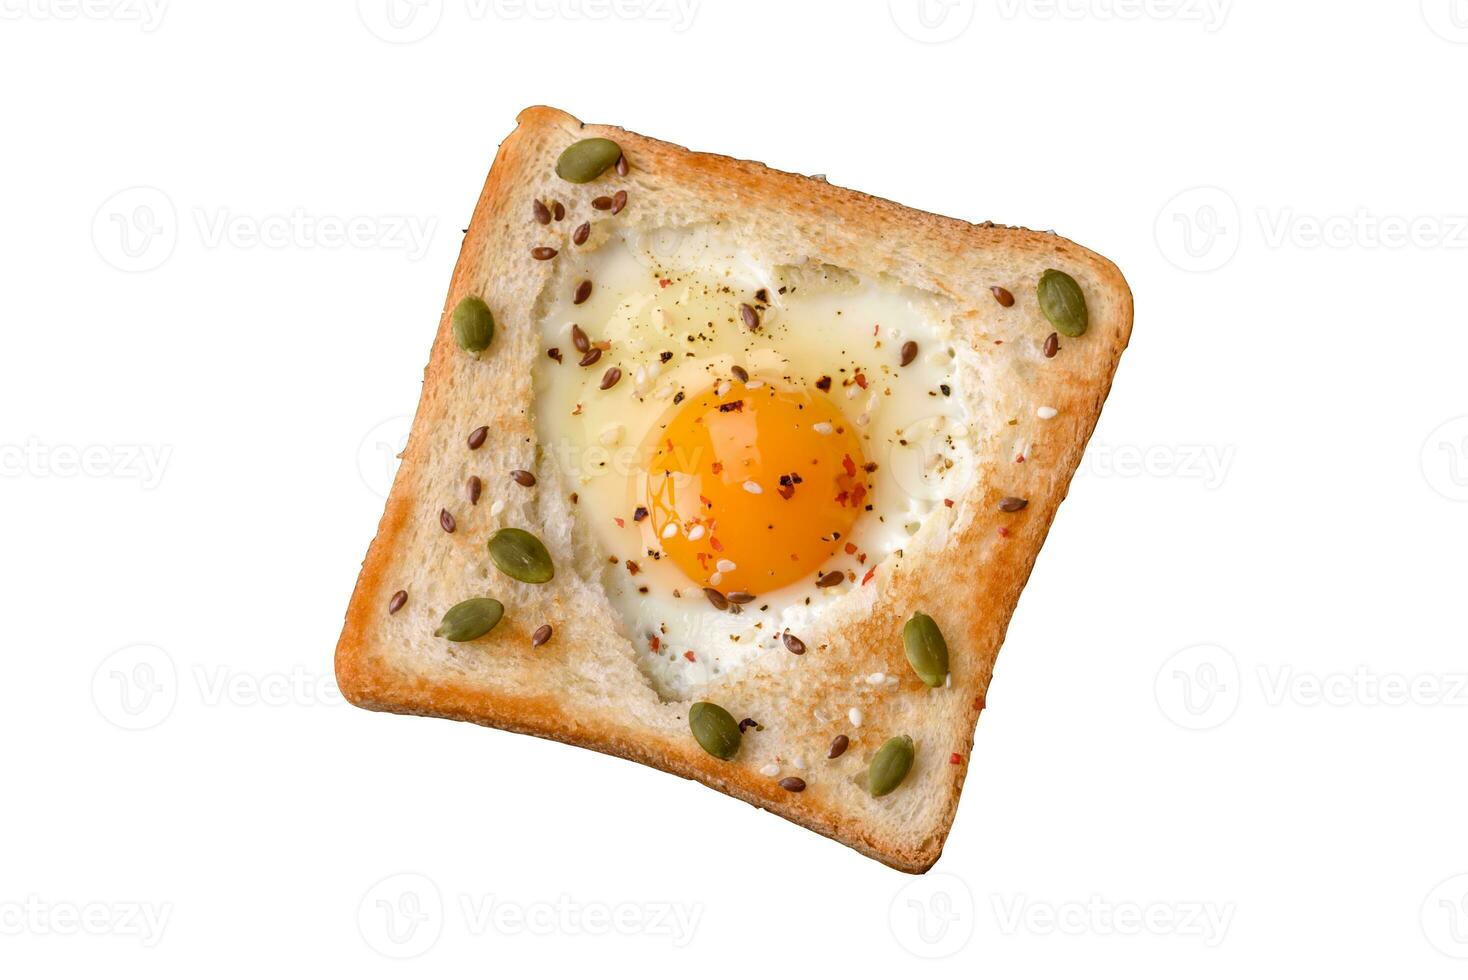 hjärta formad friterad ägg i bröd rostat bröd med sesam frön, lin frön och pumpa frön på en svart tallrik foto